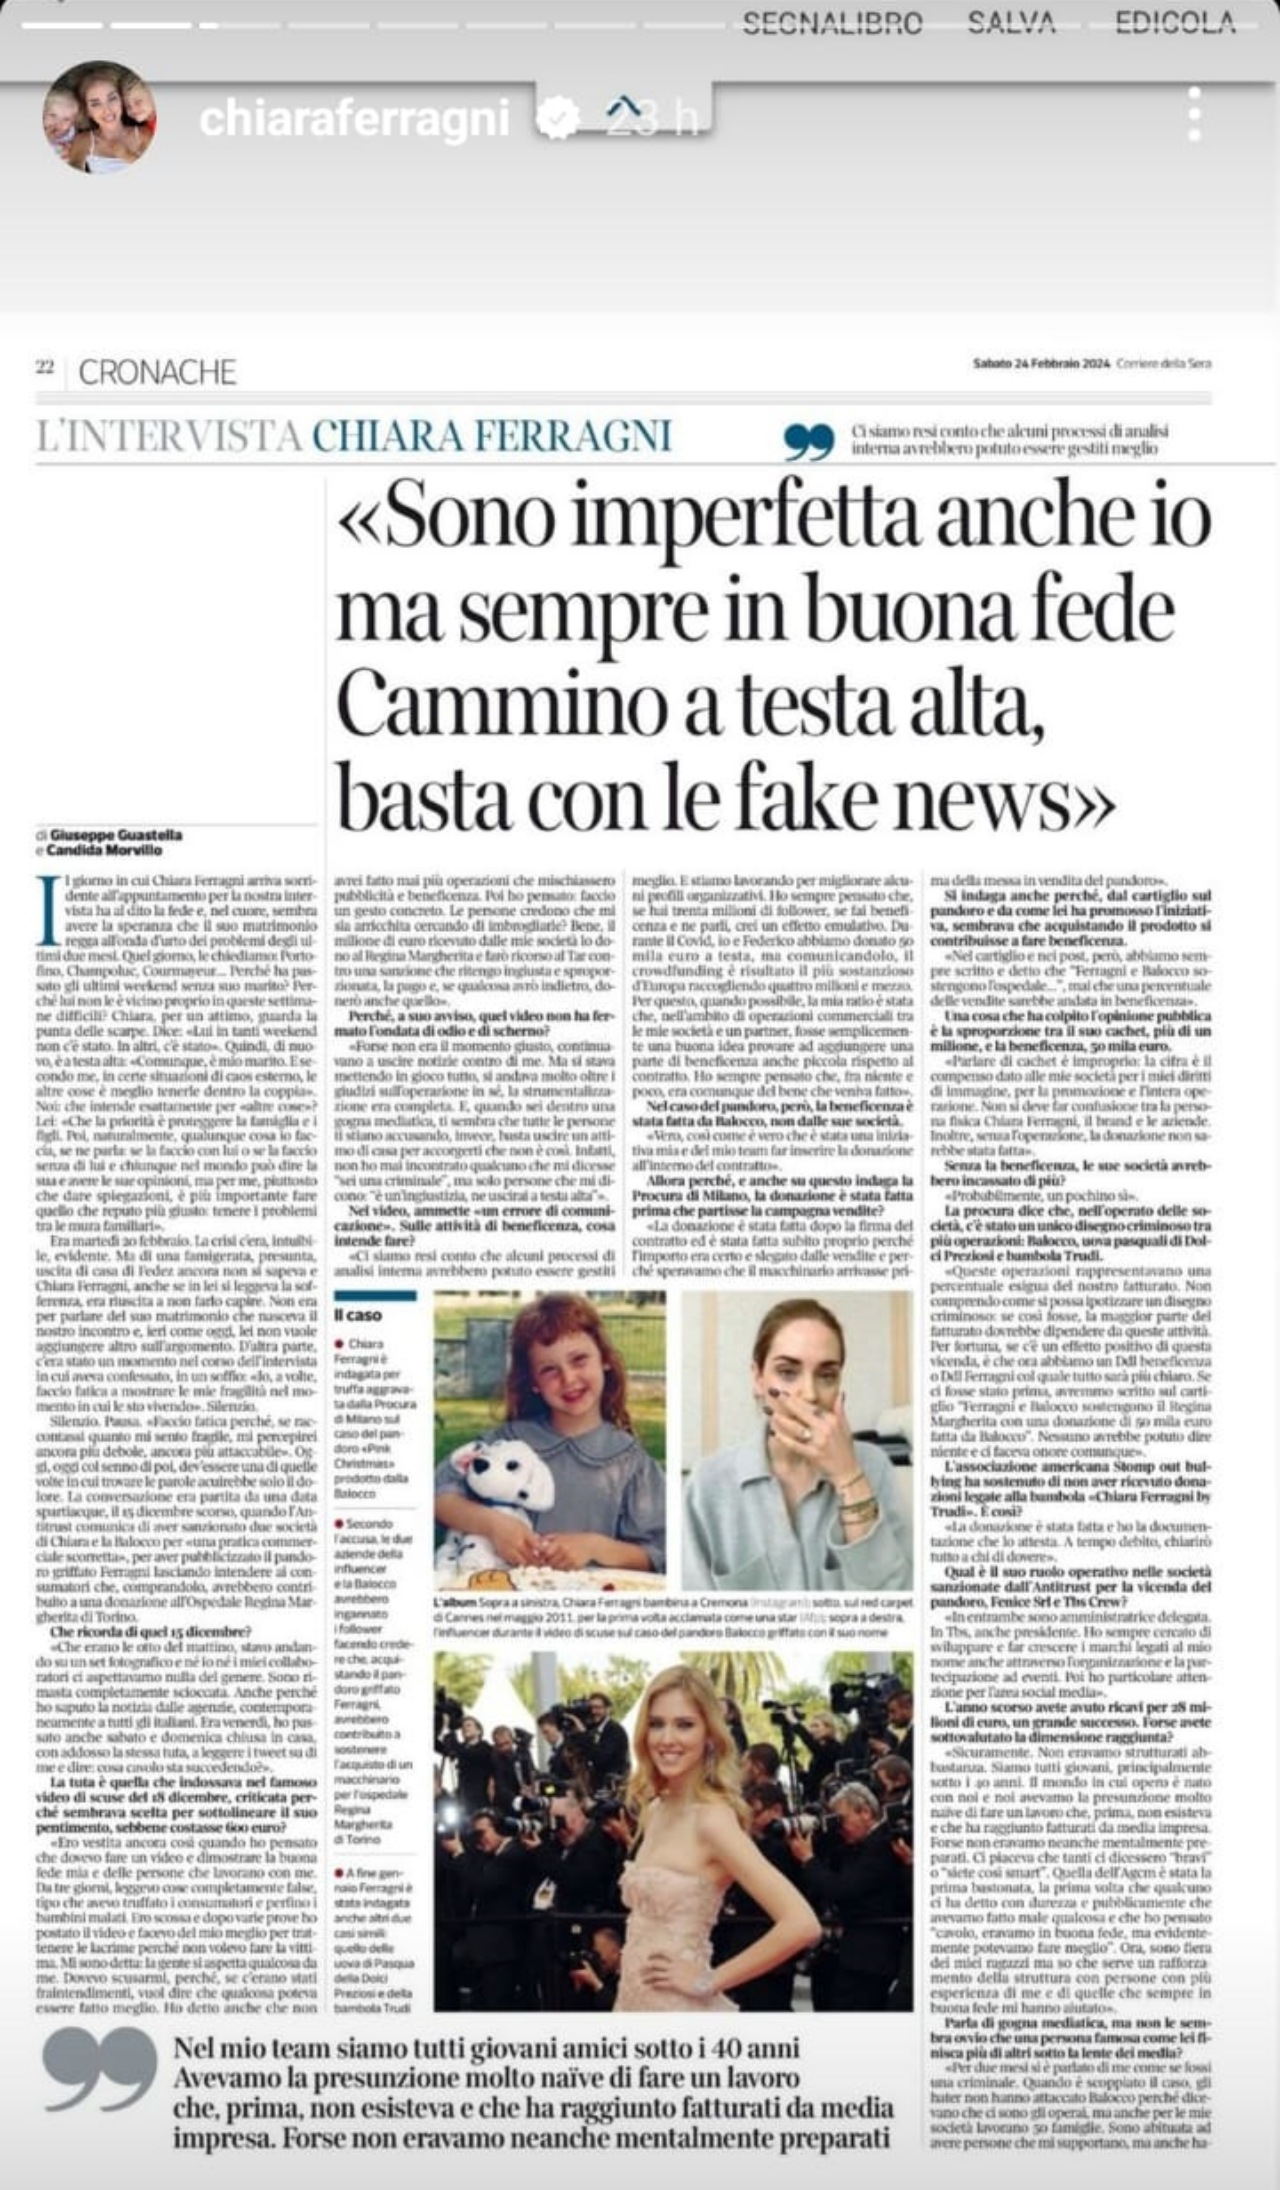 Interview by Chiara Ferragni at Corriere della Sera